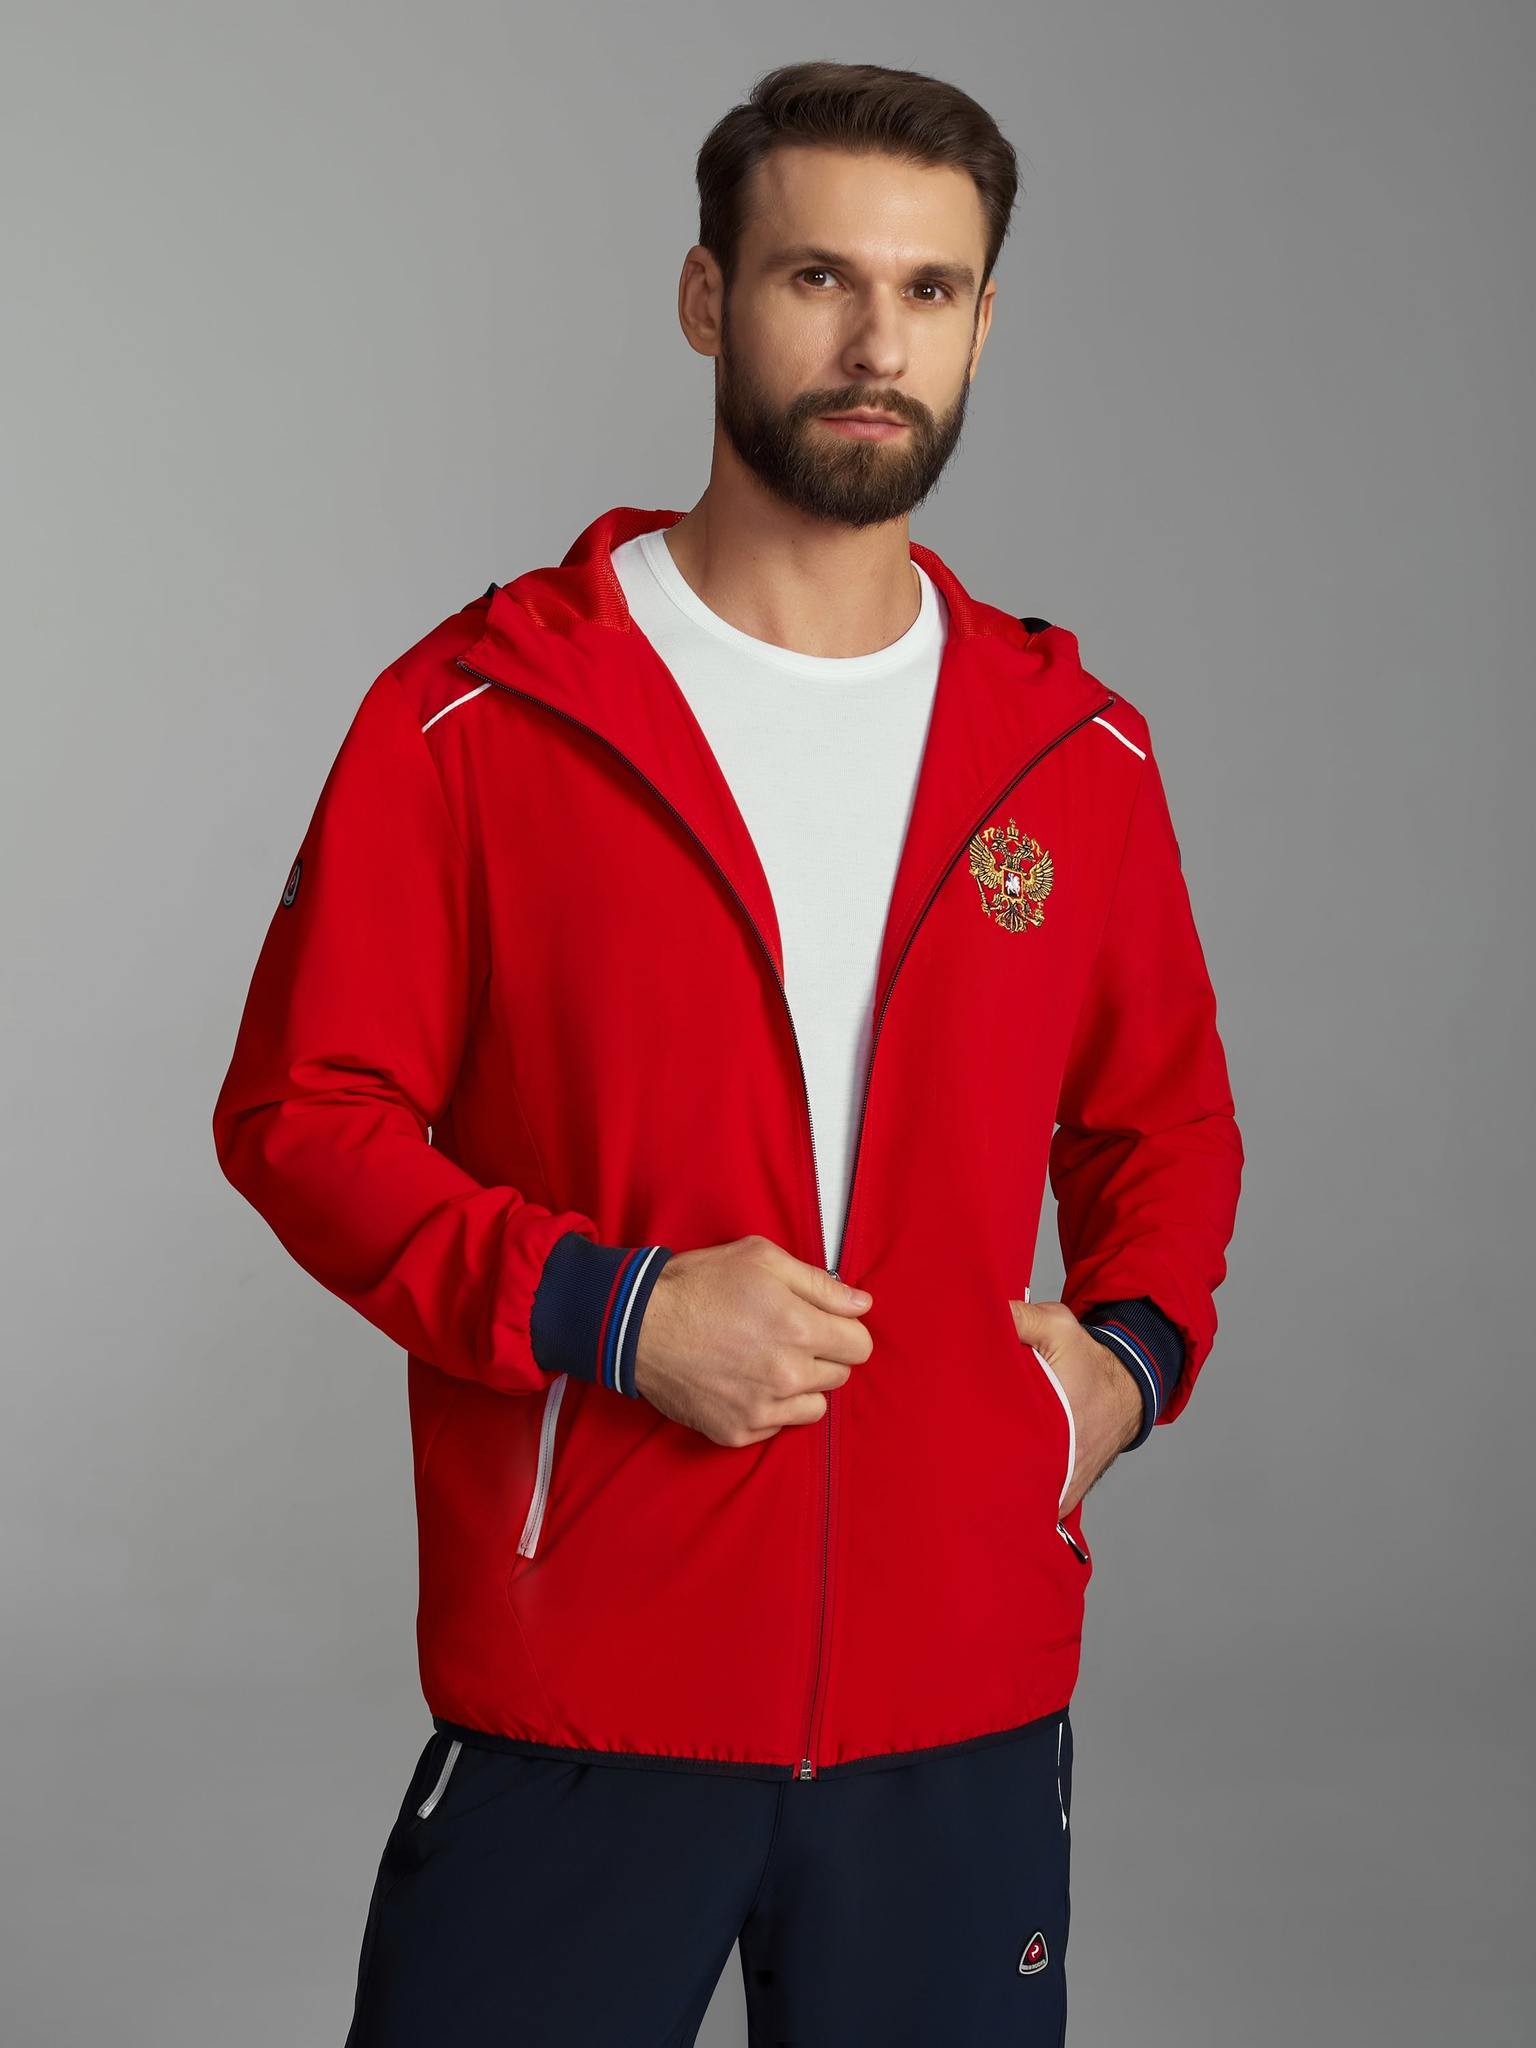 Спортивный костюм Россия плащёвка красный – купить в интернет-магазине, цена, заказ online